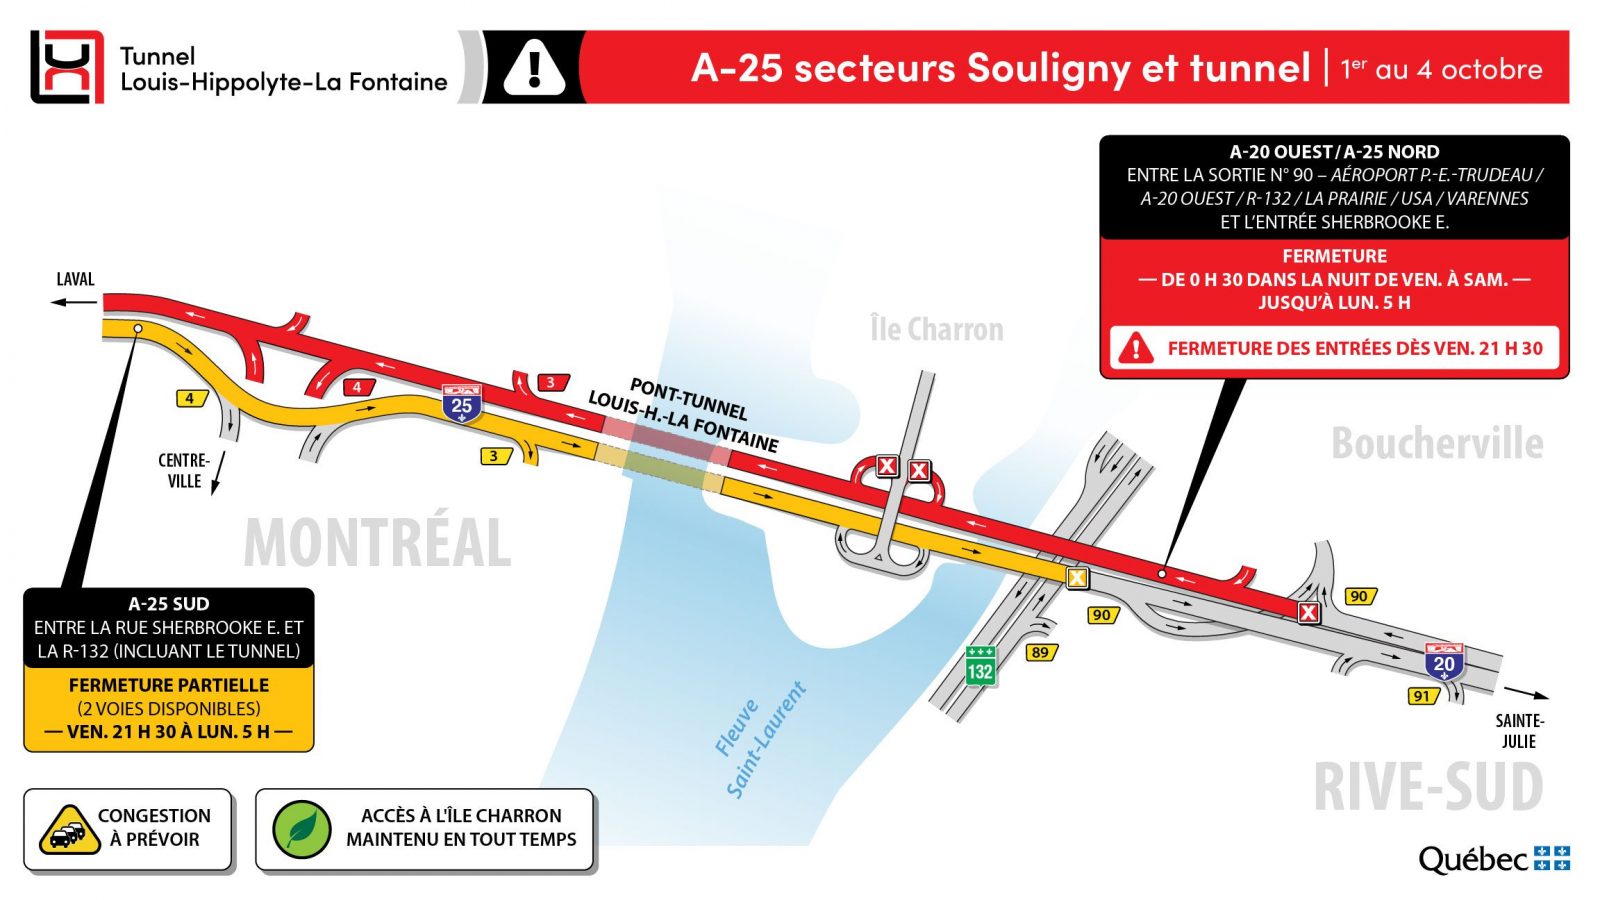 Travaux tunnel: fermeture du tunnel et de l’A-25 vers Montréal fin de semaine du 1er octobre